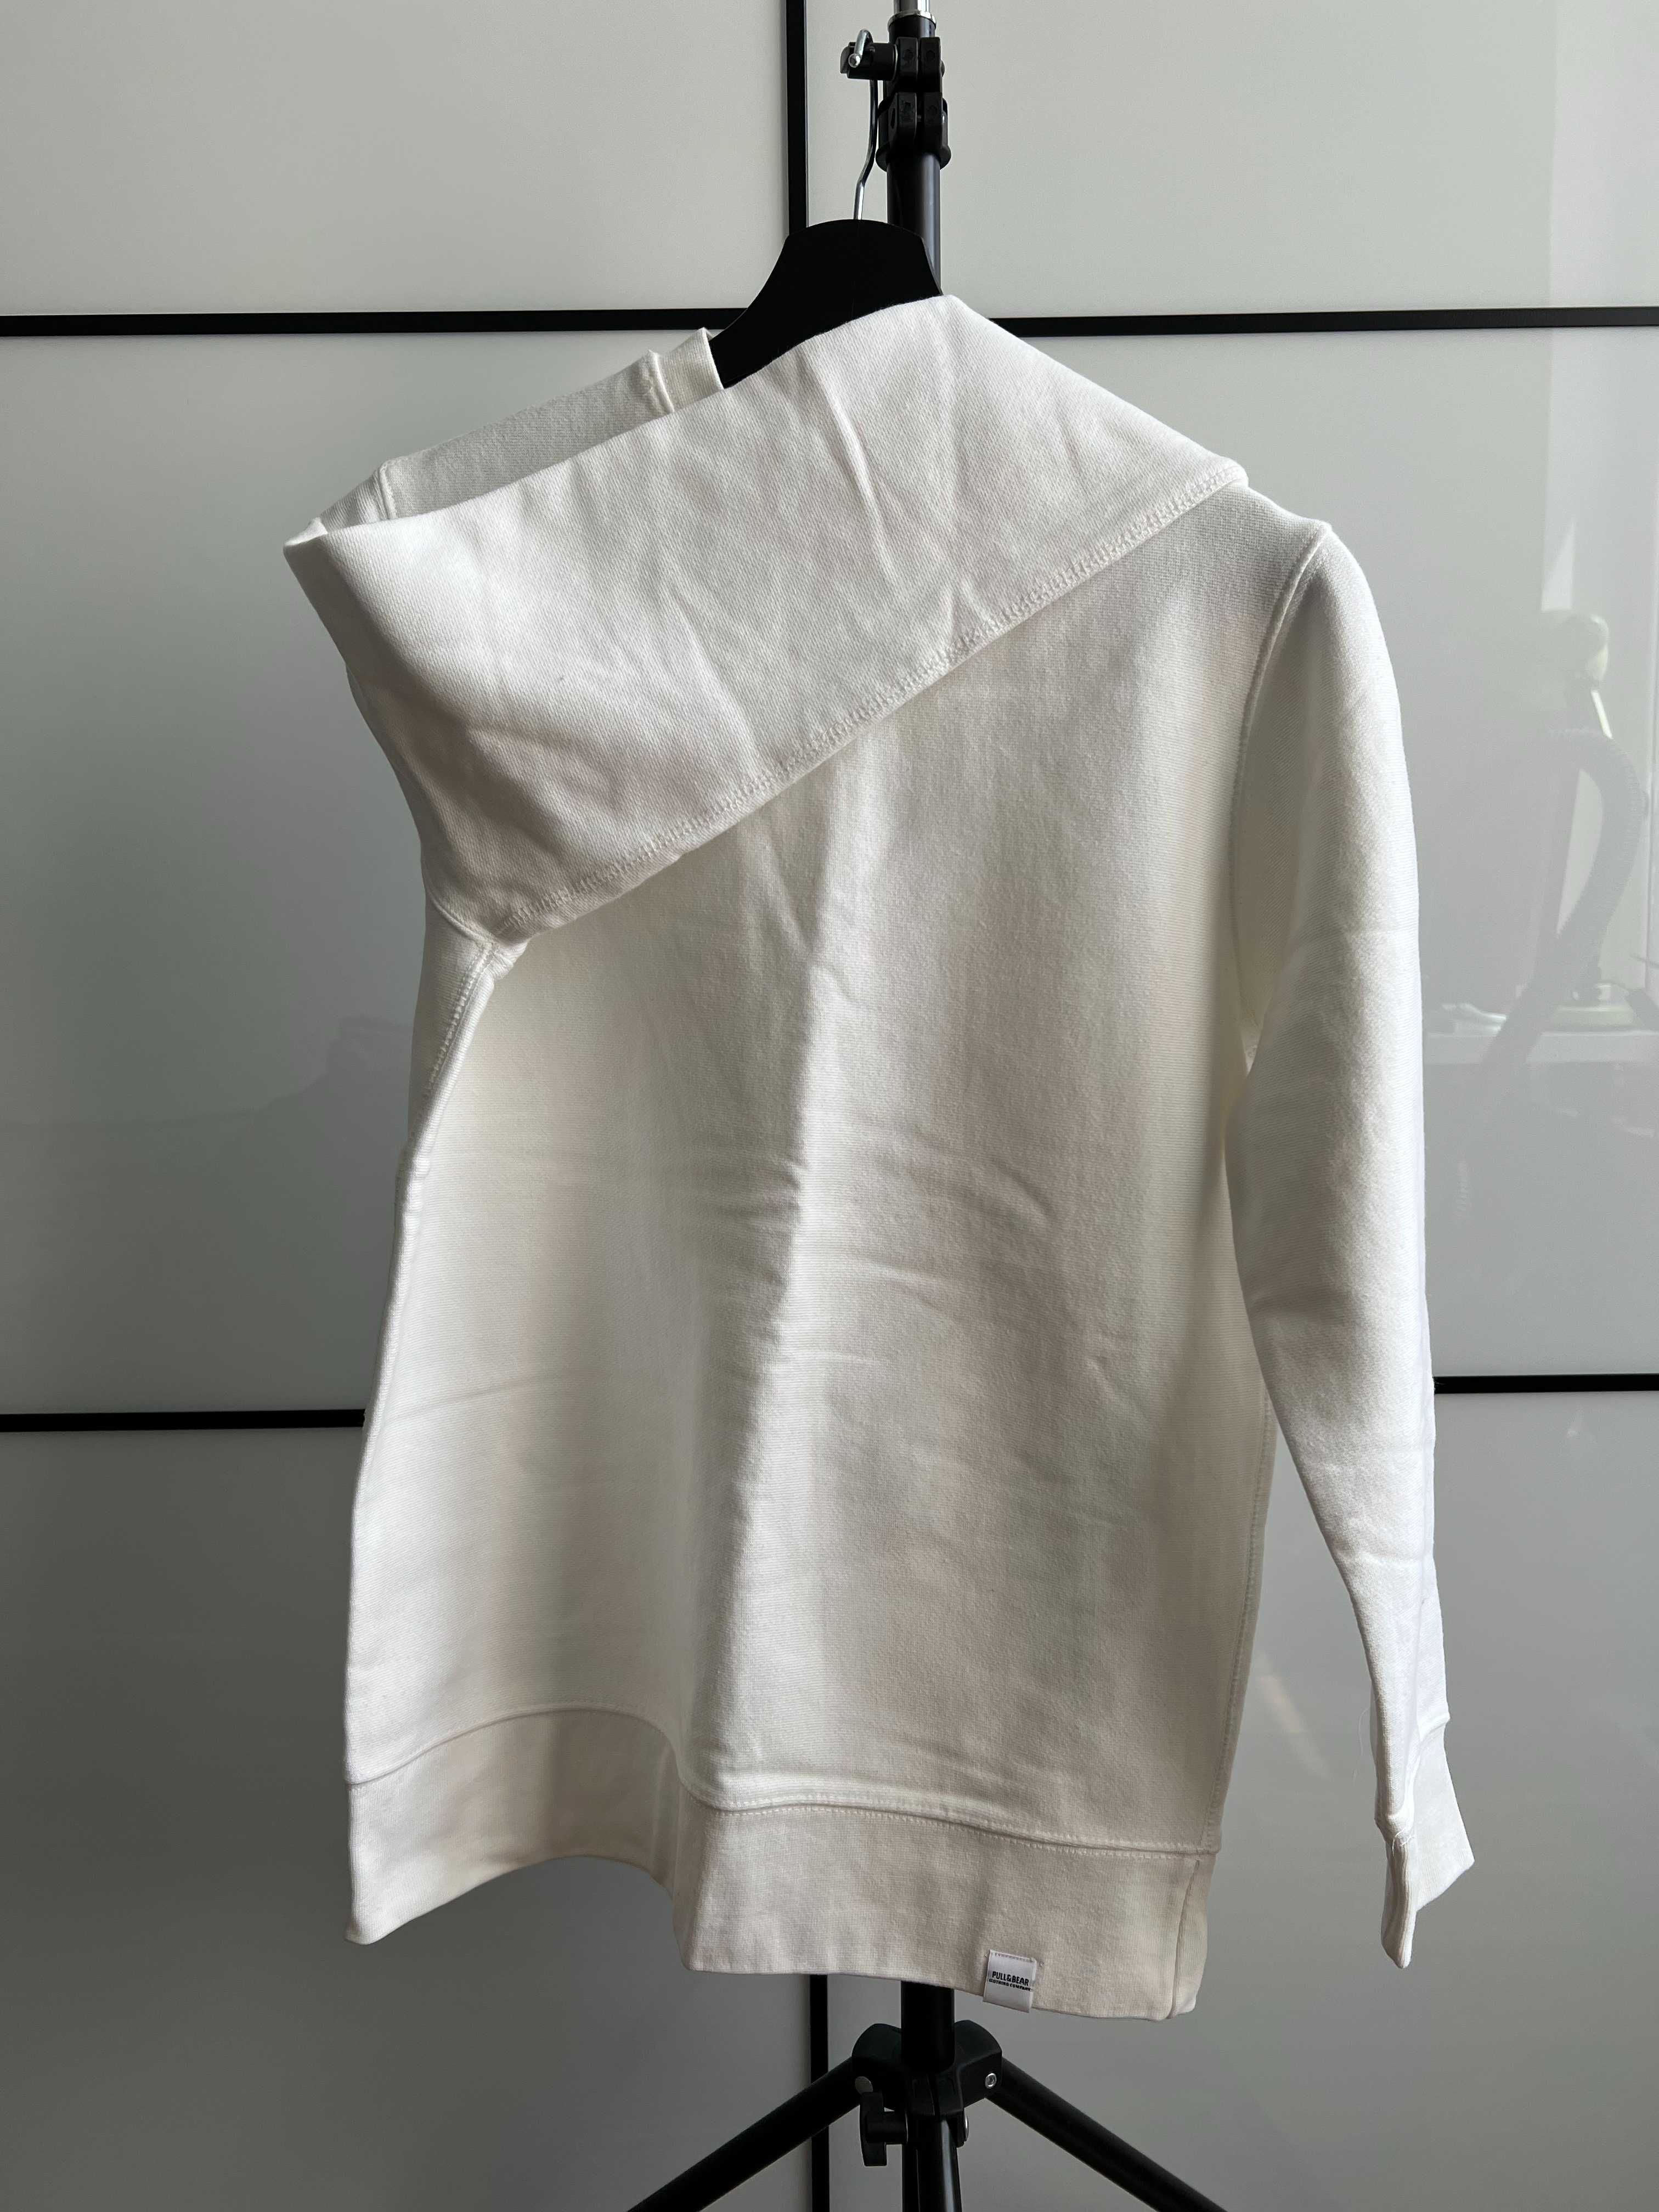 Бял суичър без качулка Pull and Bear, размер XS, White Sweatshirt,